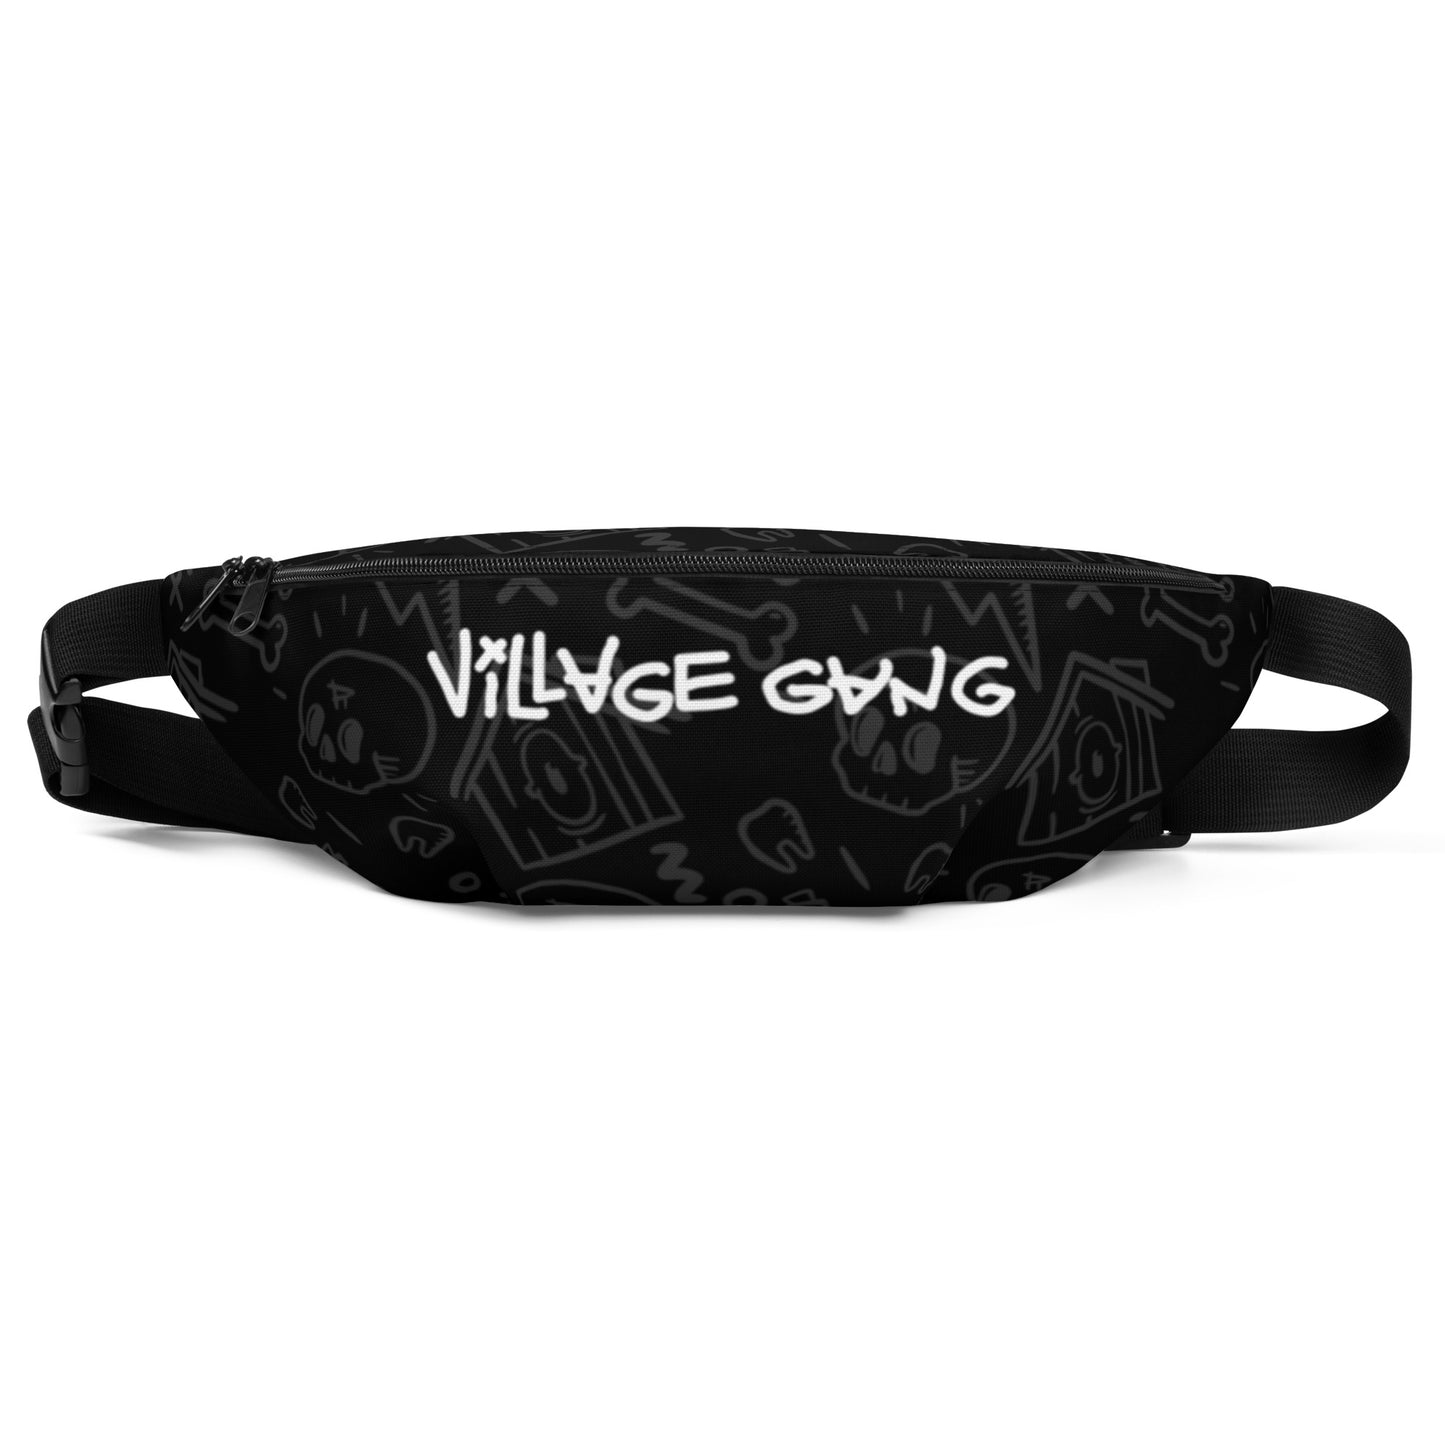 Village gang |  waist bag